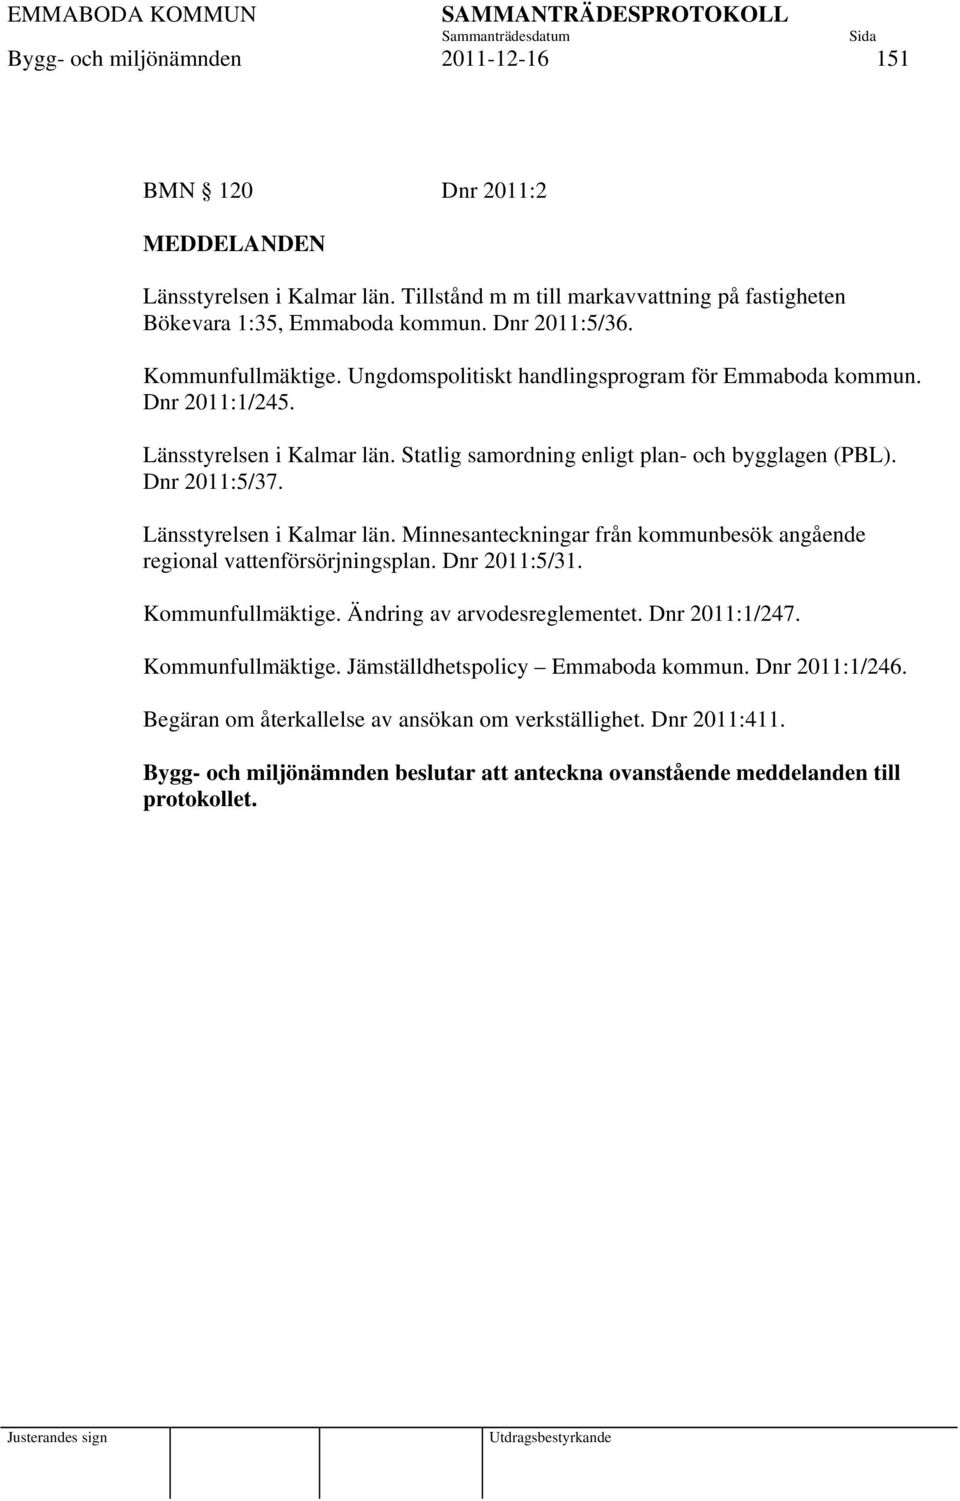 Länsstyrelsen i Kalmar län. Minnesanteckningar från kommunbesök angående regional vattenförsörjningsplan. Dnr 2011:5/31. Kommunfullmäktige. Ändring av arvodesreglementet. Dnr 2011:1/247.